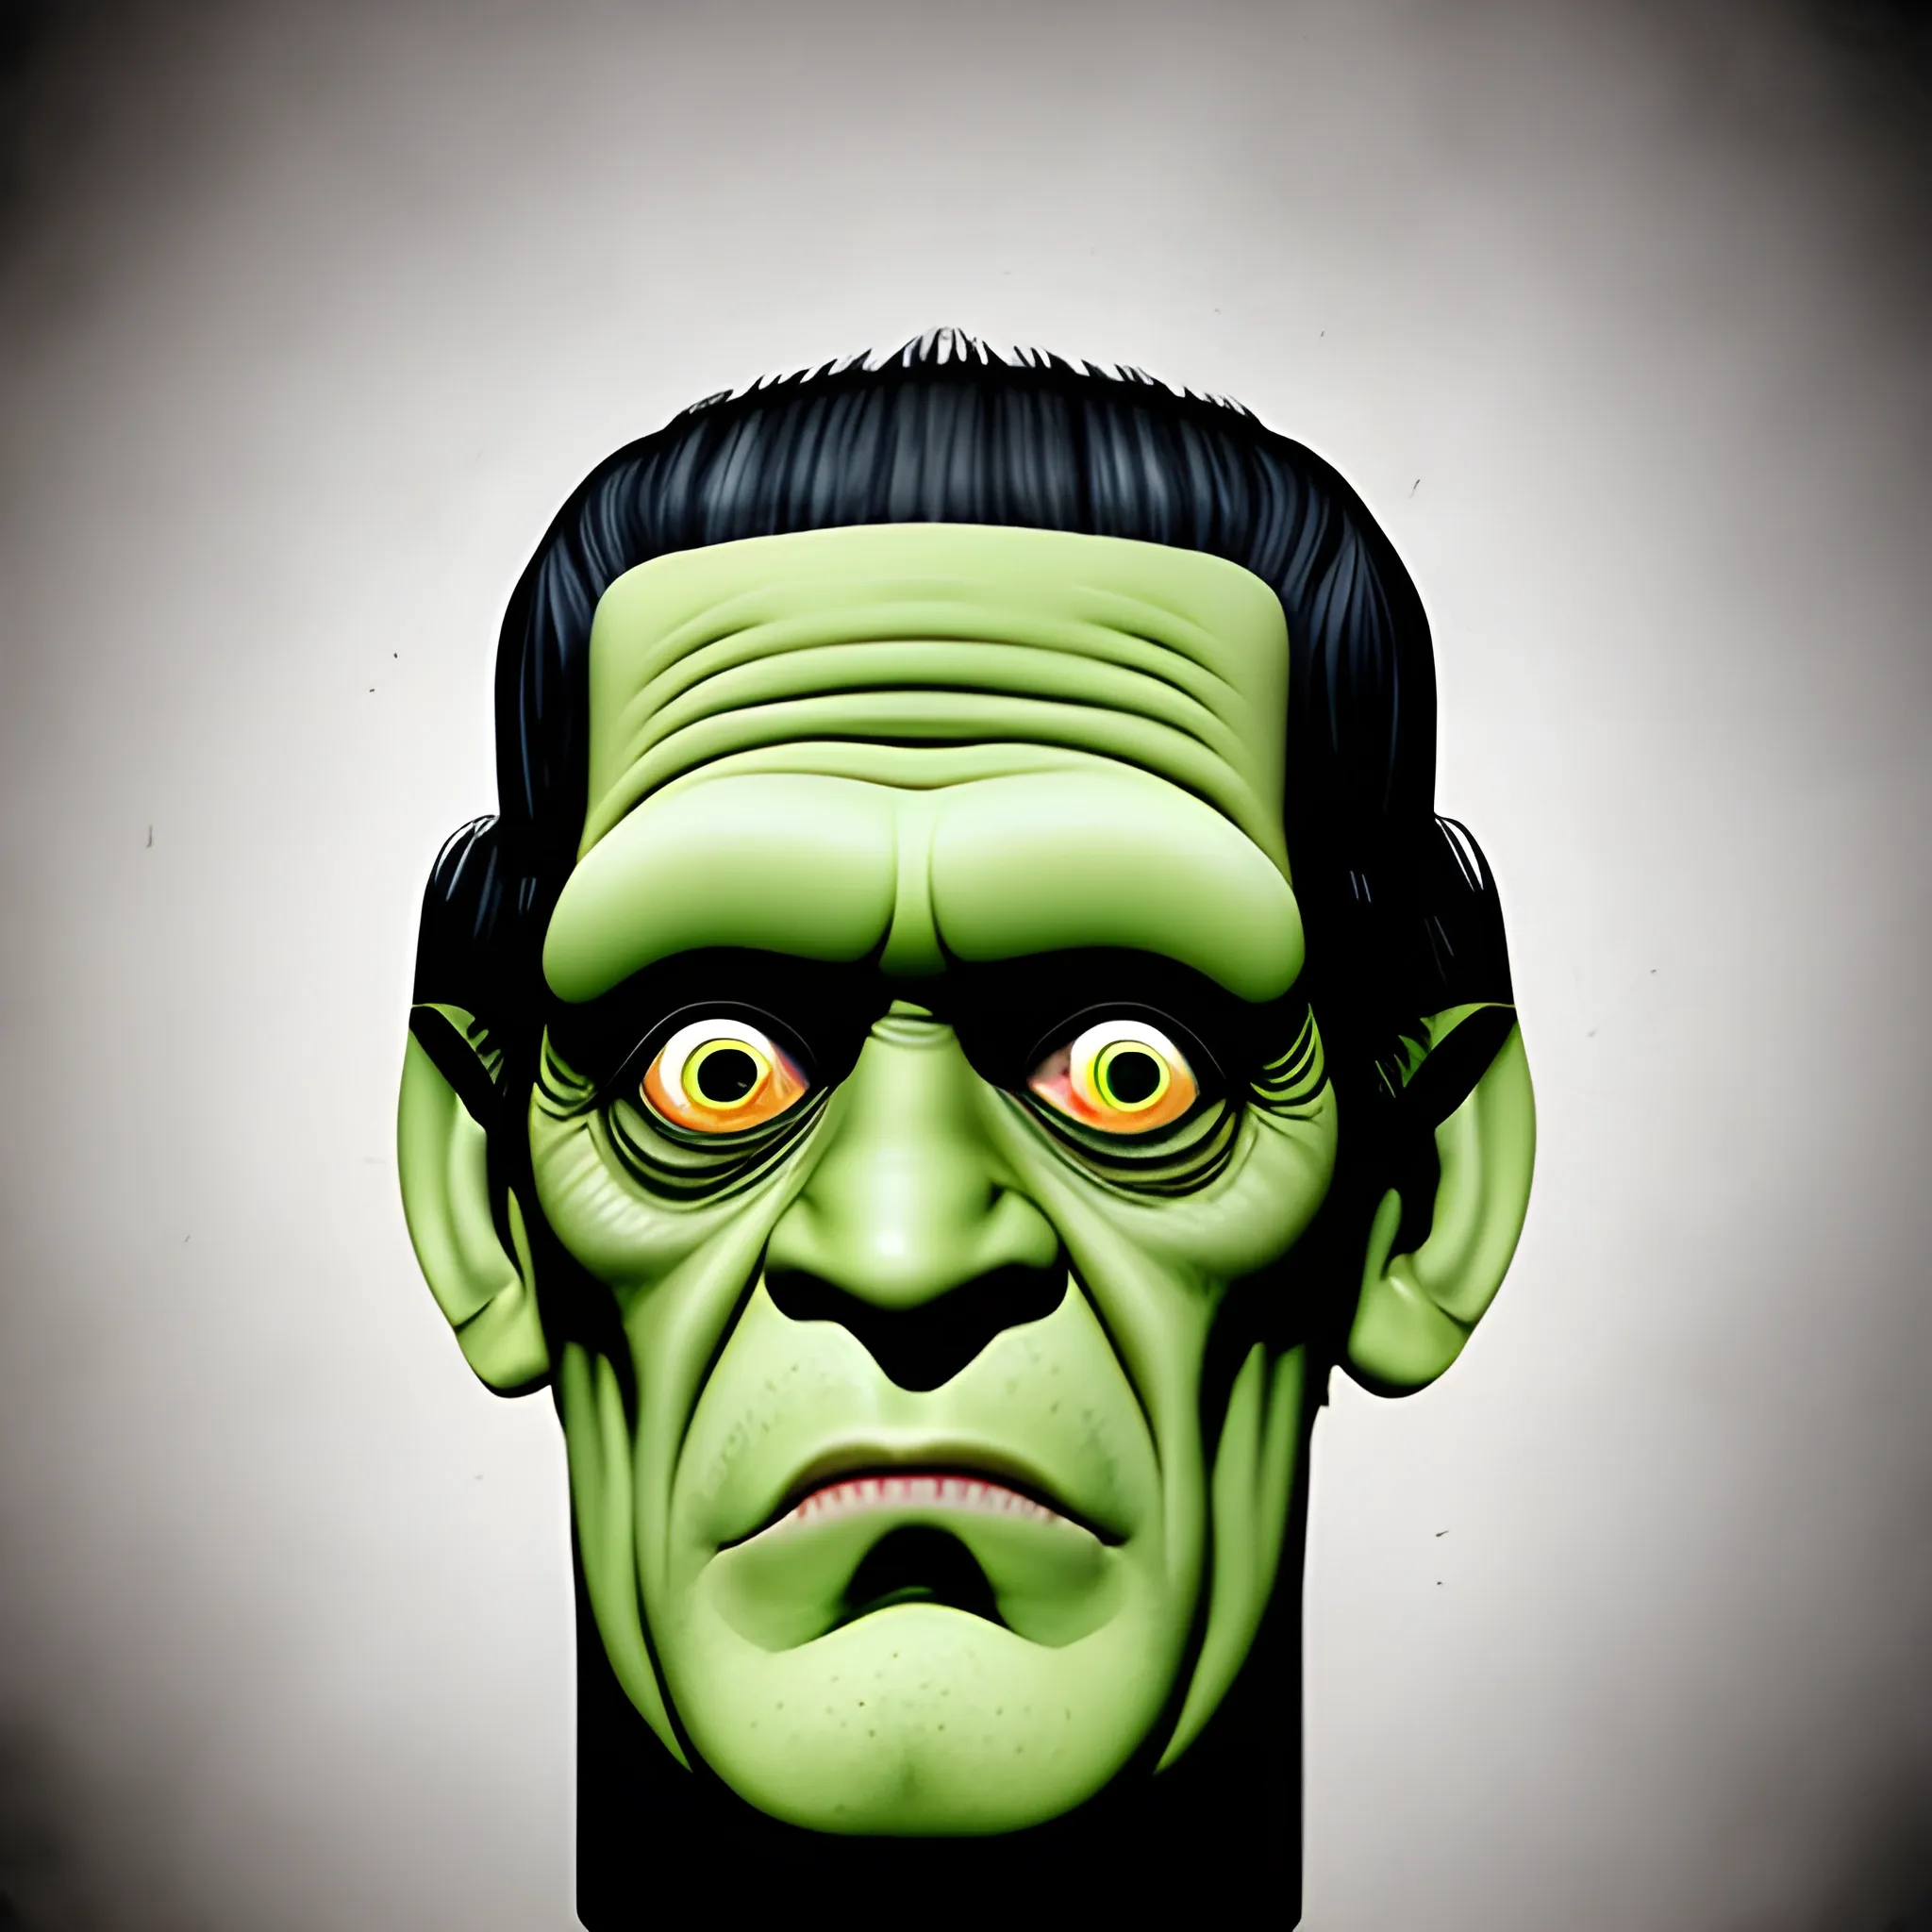 Herman munster Frankenstein monster flat head illustration 